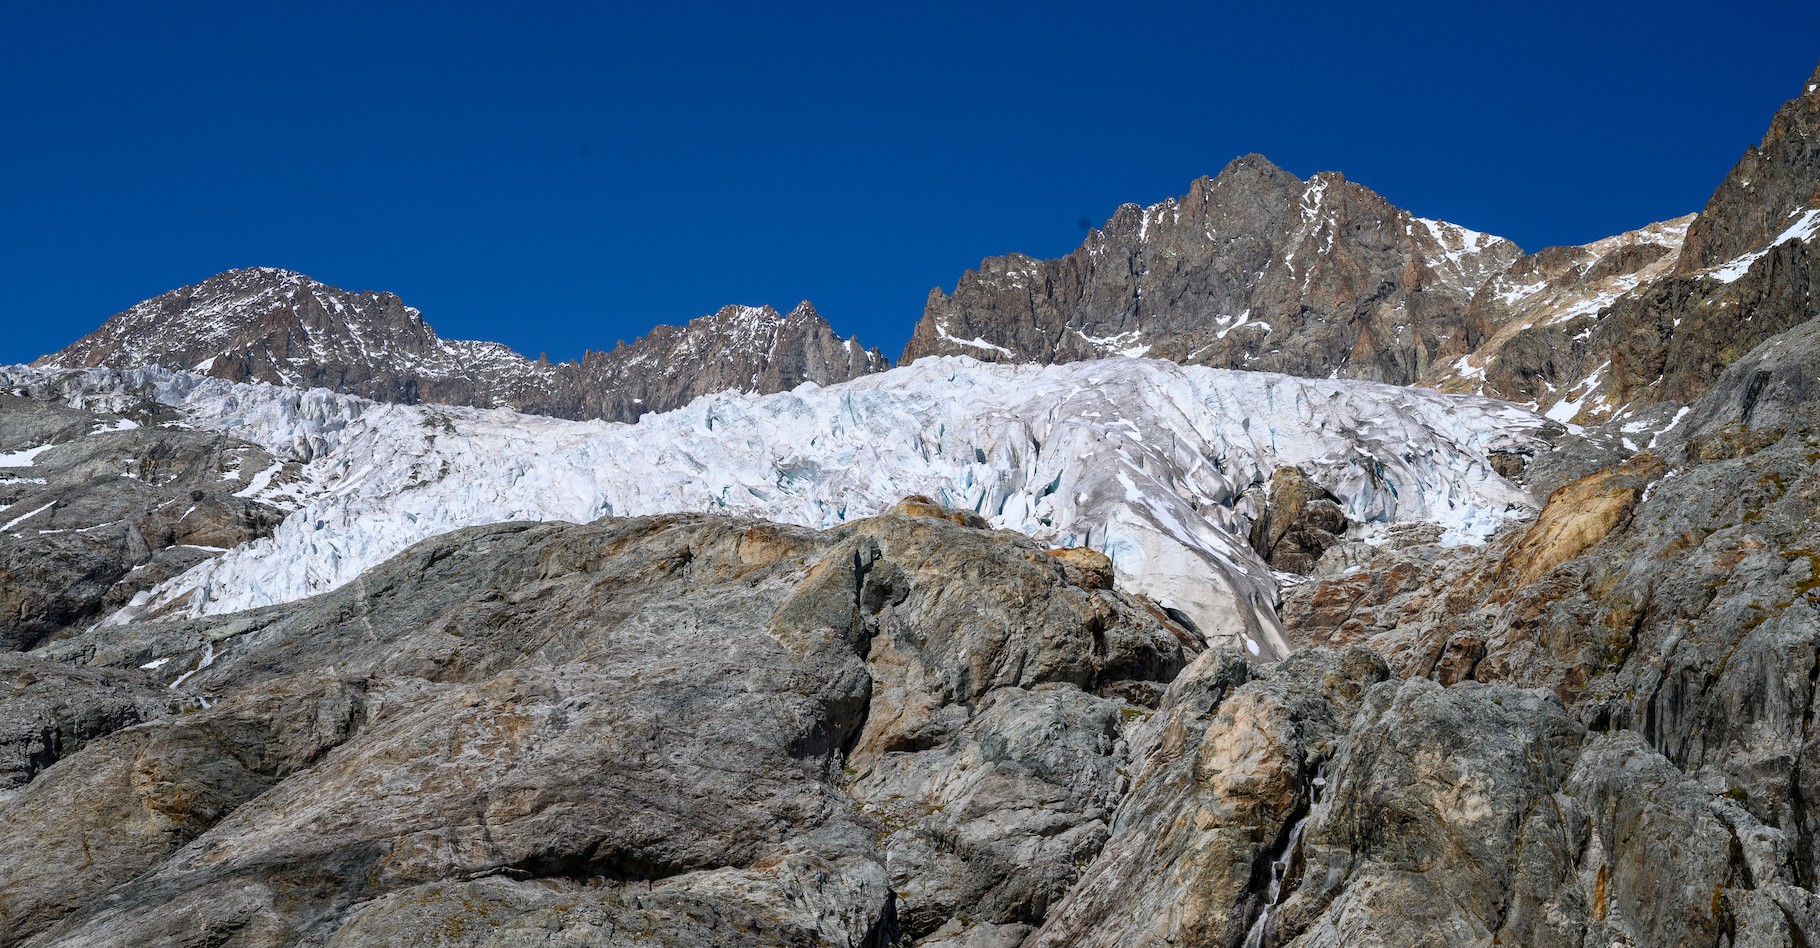 Le glacier Blanc, c’est le plus grand du massif des Écrins (Alpes). Mais, après un hiver et un printemps secs suivis d’un été torride, il a multiplié les records en 2022. Le plus faible enneigement l’hiver dernier, la plus forte fonte estivale ensuite et pour finir, le bilan annuel le plus déficitaire. Ce glacier a perdu en 2022, quatre fois plus de masse que la moyenne de ces 23 dernières années. Soit 3 à 4 % de son épaisseur totale. © Pat on stock, Adobe Stock